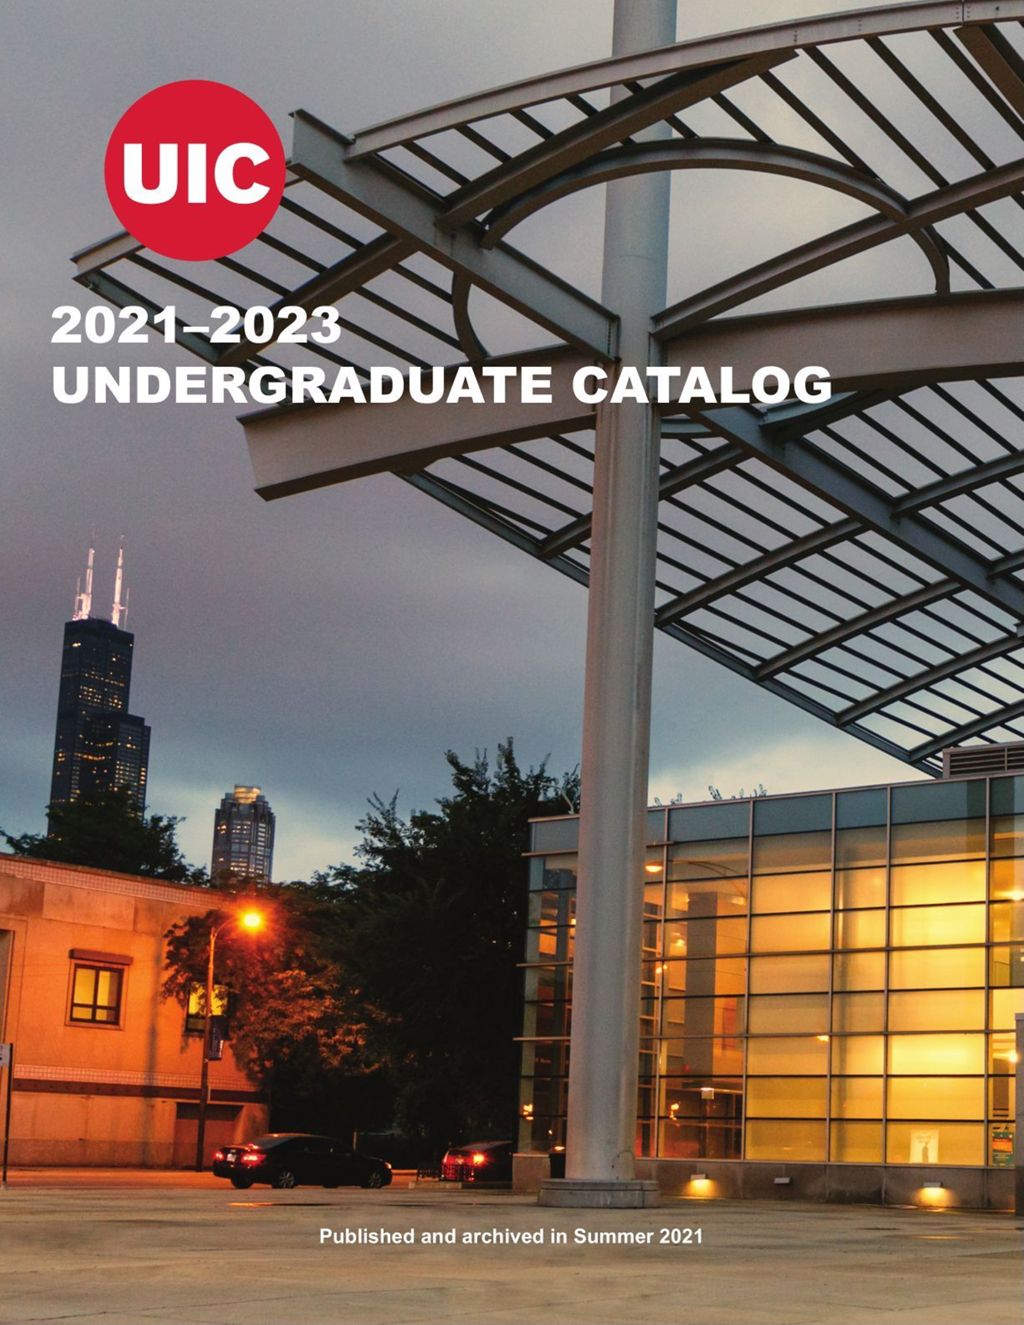 Miniature of Undergraduate Catalog, 2021-2023